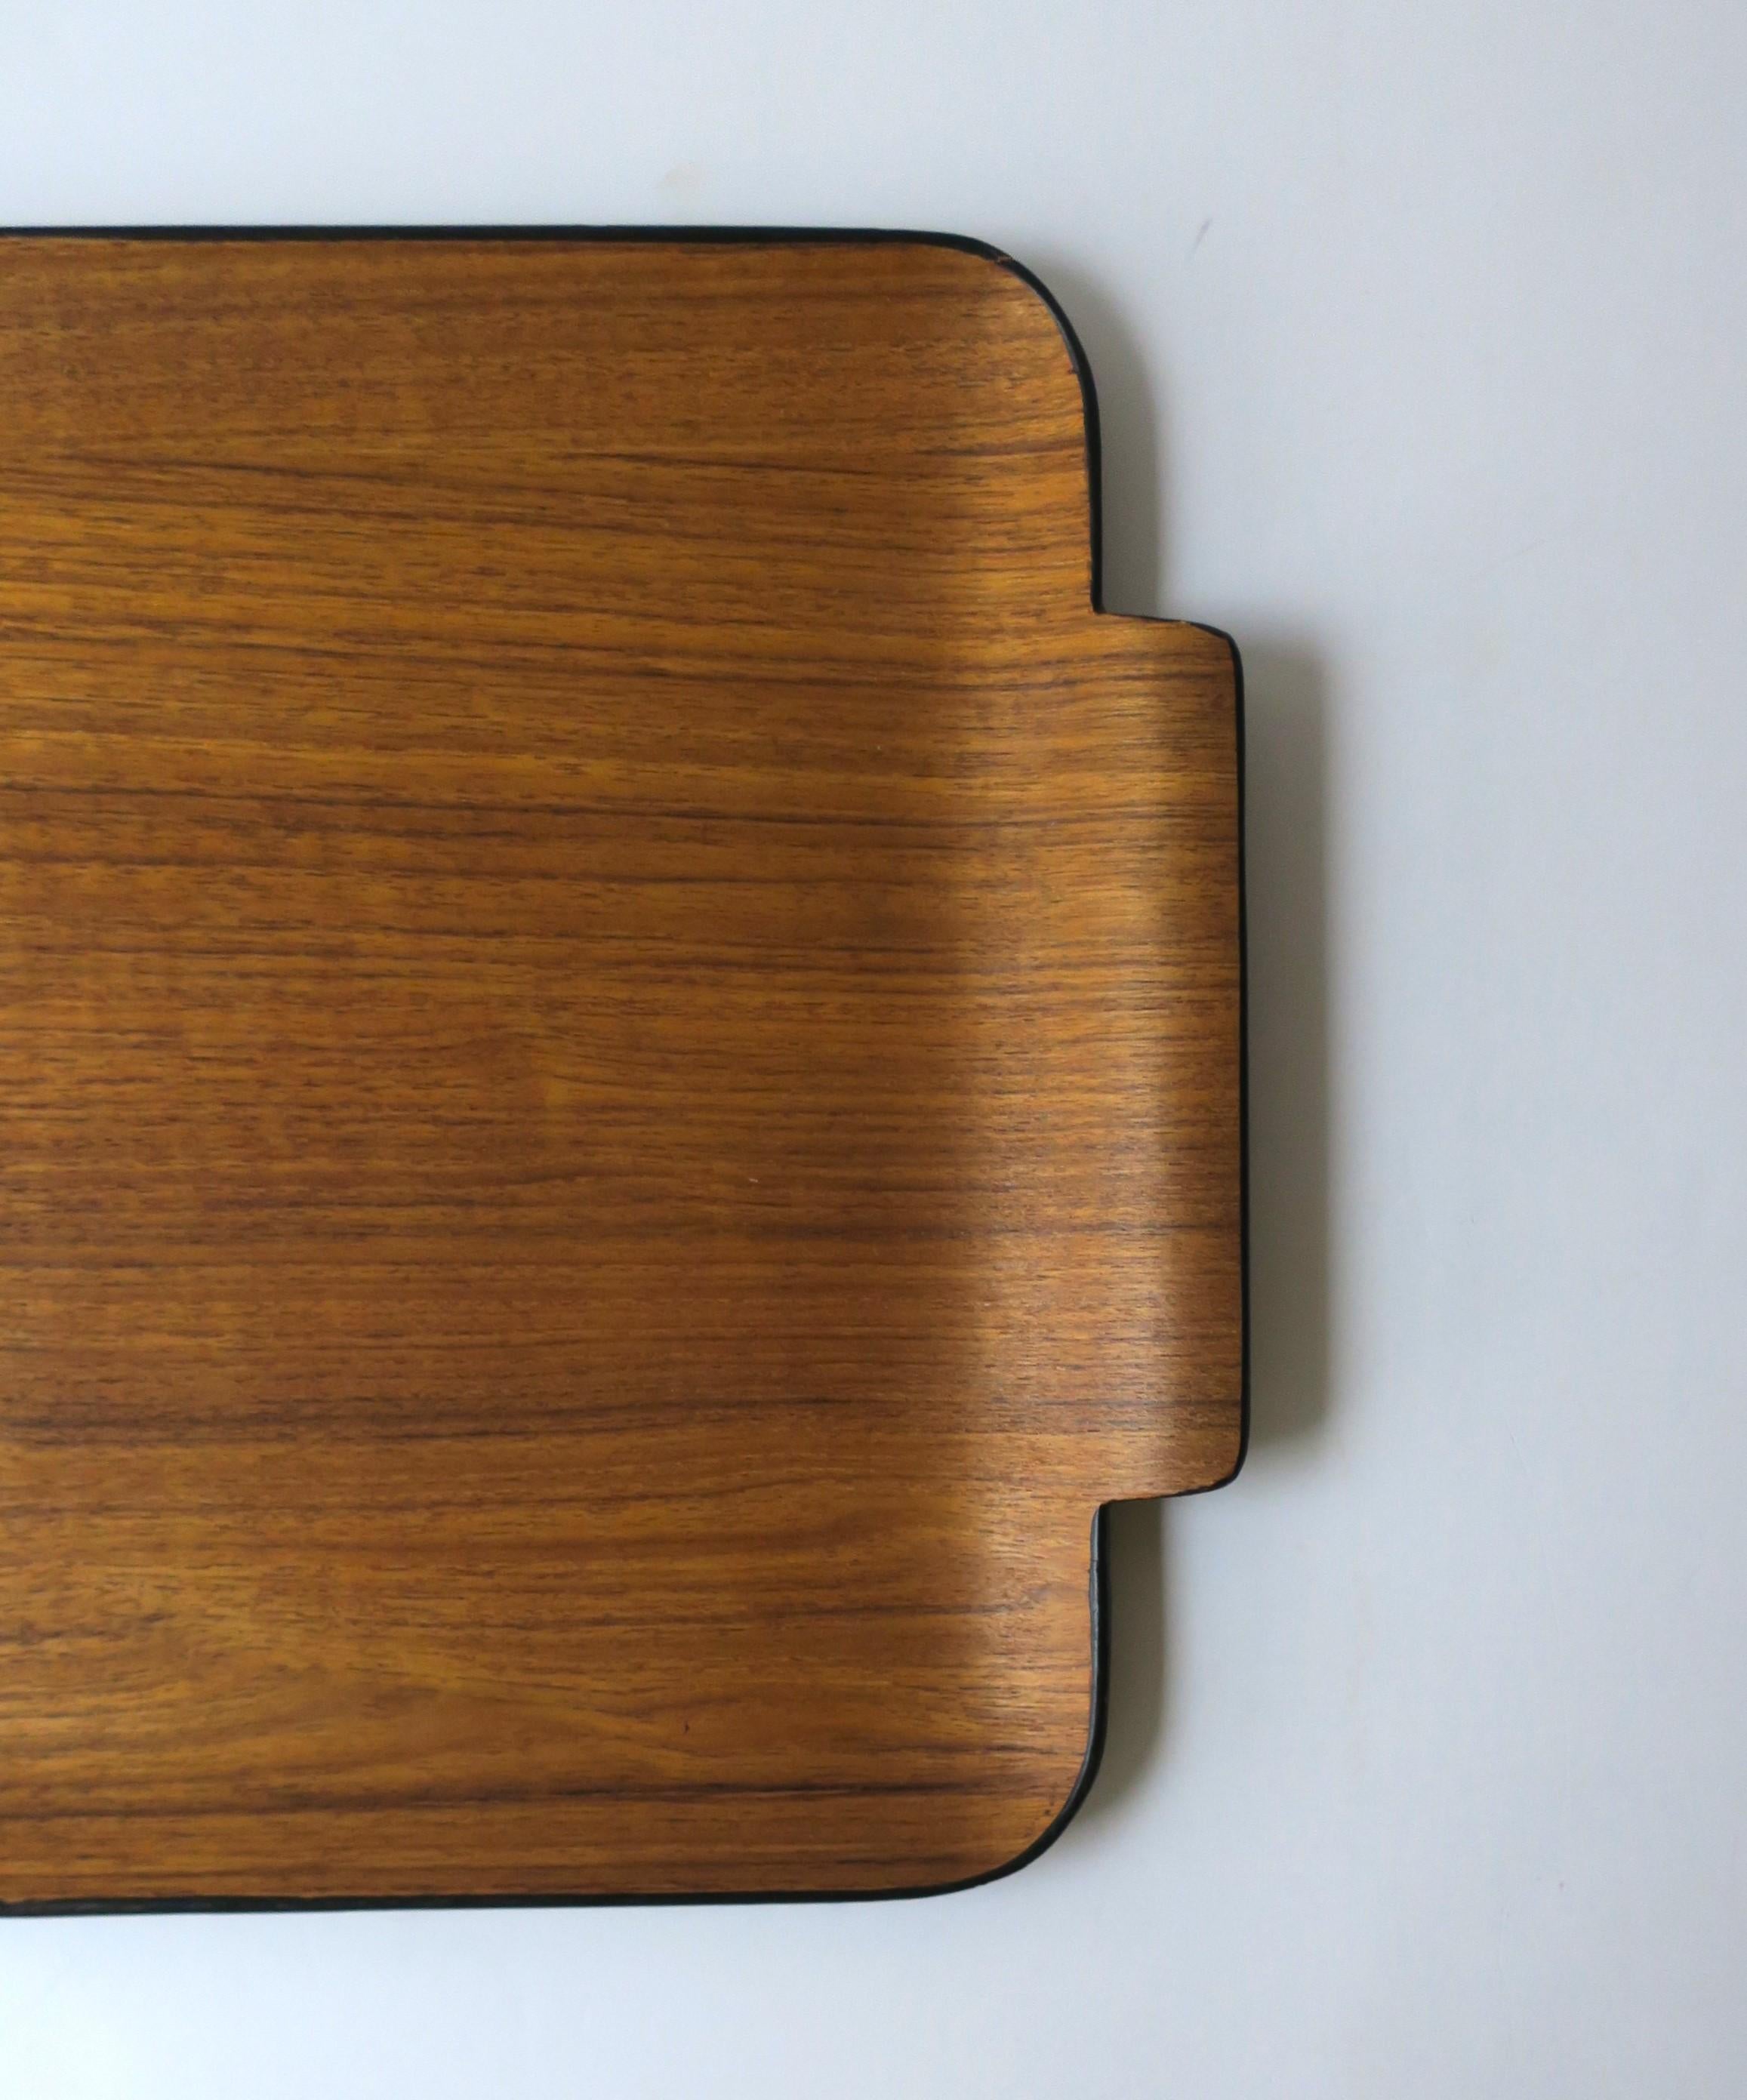 Japanese Teak Wood Tray Modern Minimalist For Sale 3